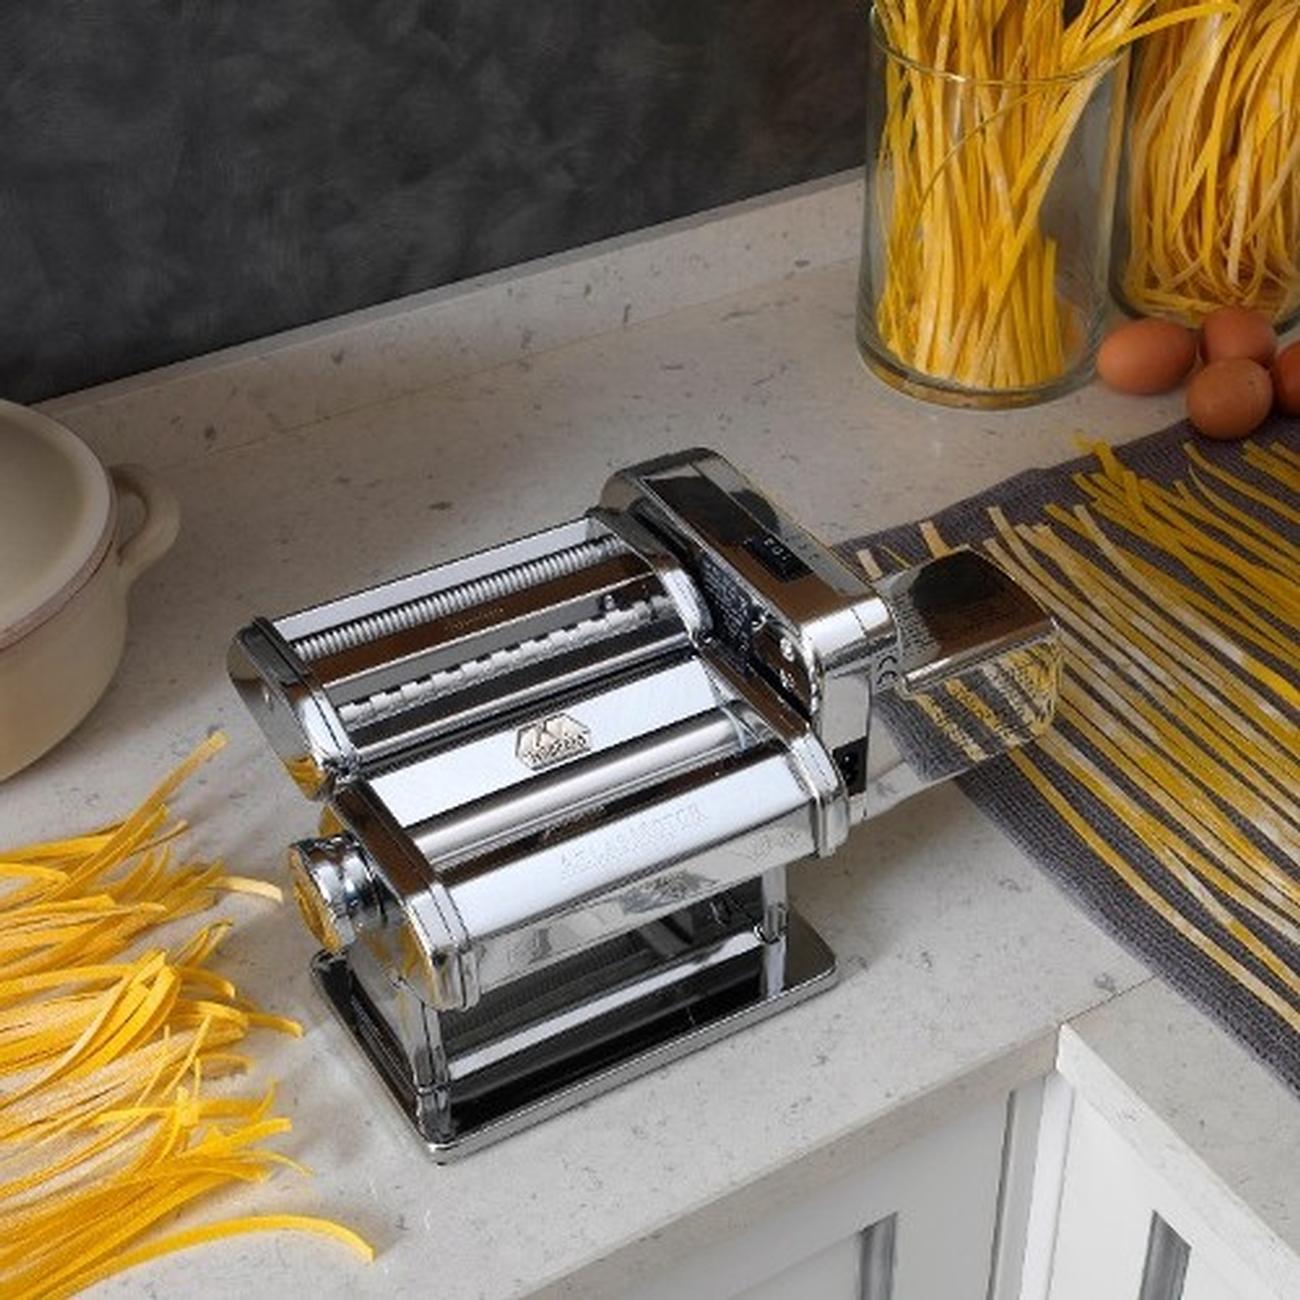 Pasta Machine - Whisk